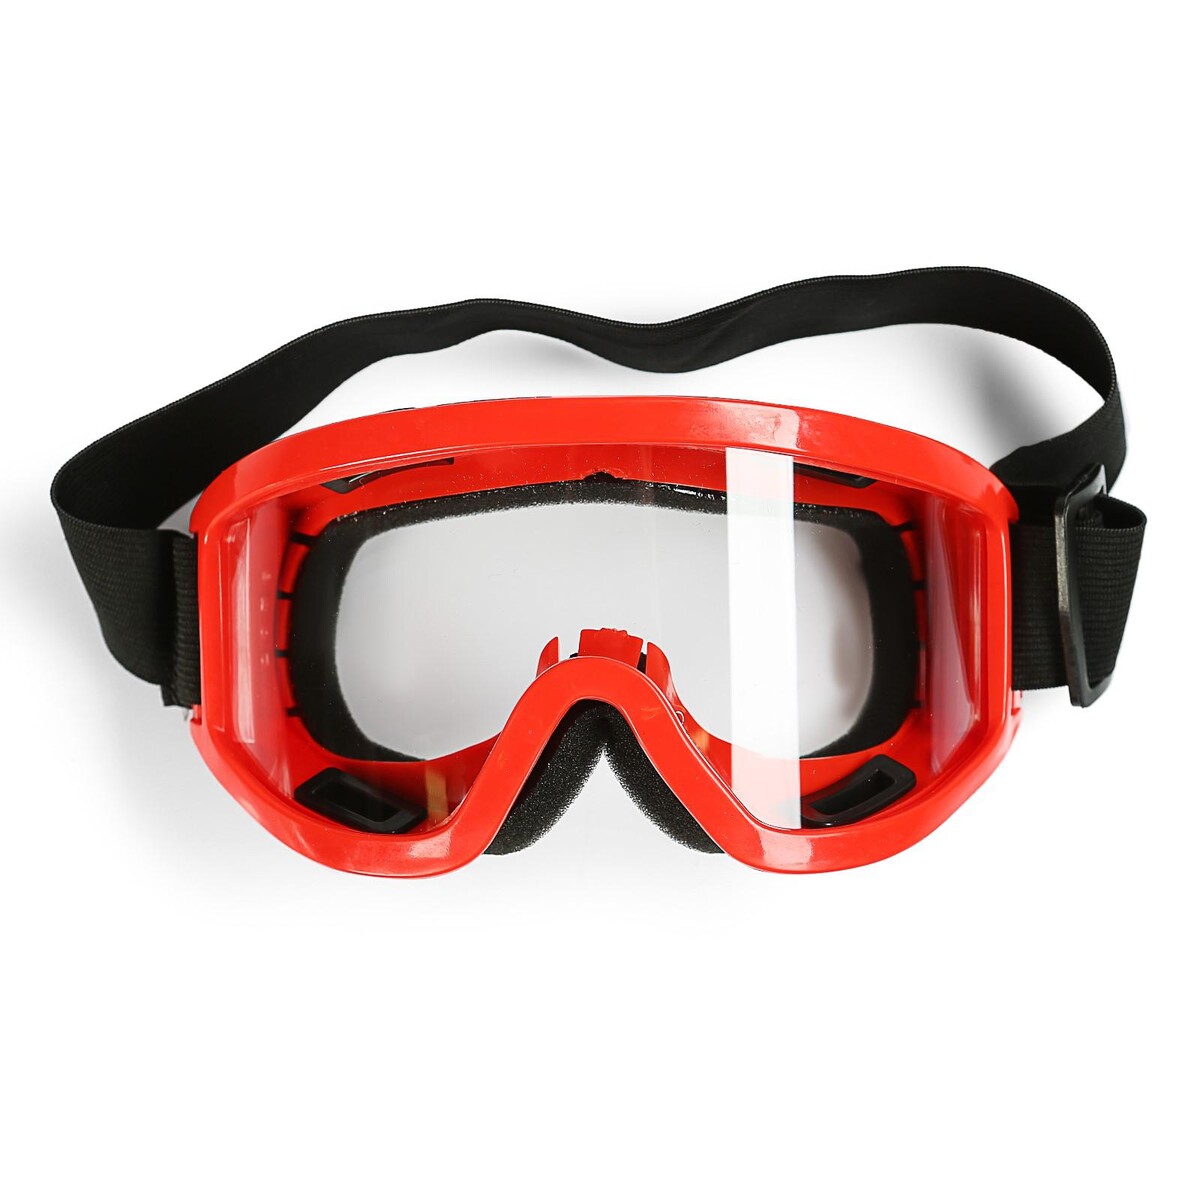 Очки-маска для езды на мототехнике, стекло прозрачное, цвет красный очки маска для езды на мототехнике стекло прозрачное красный ом 21